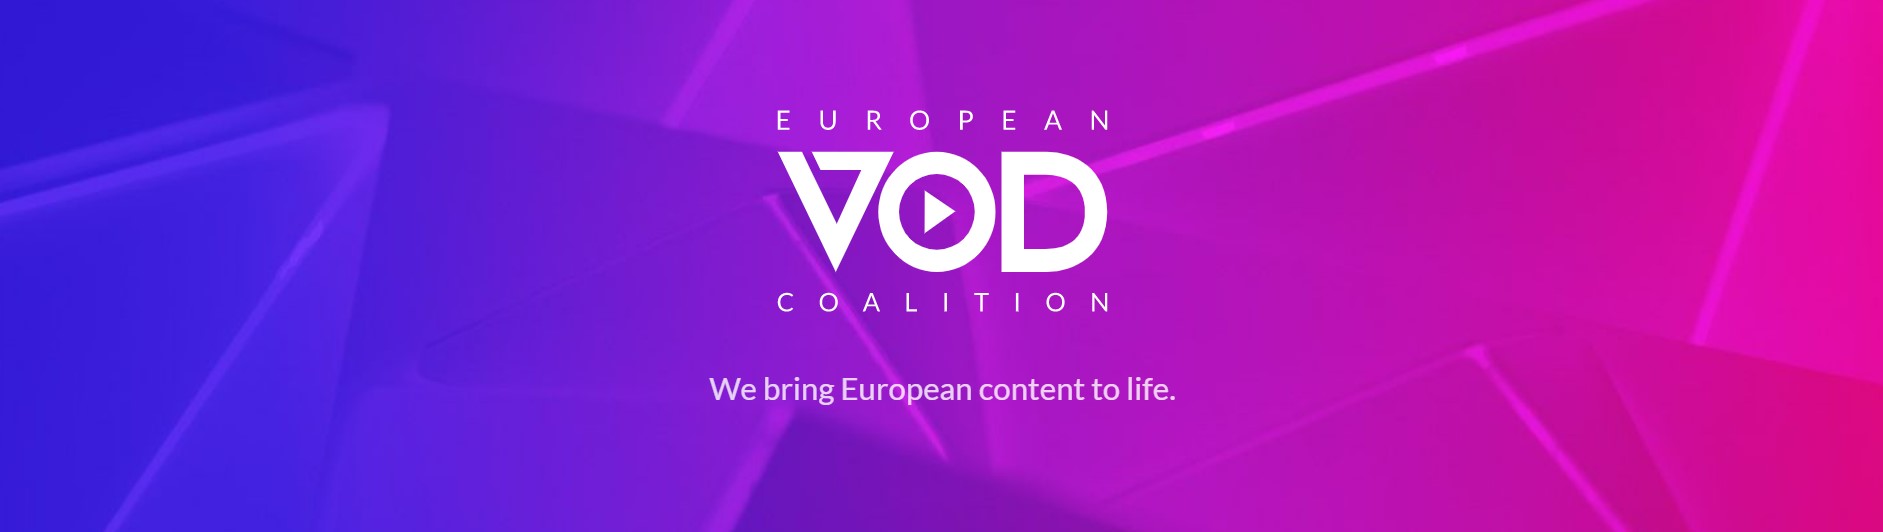 Koalicja VOD Logo